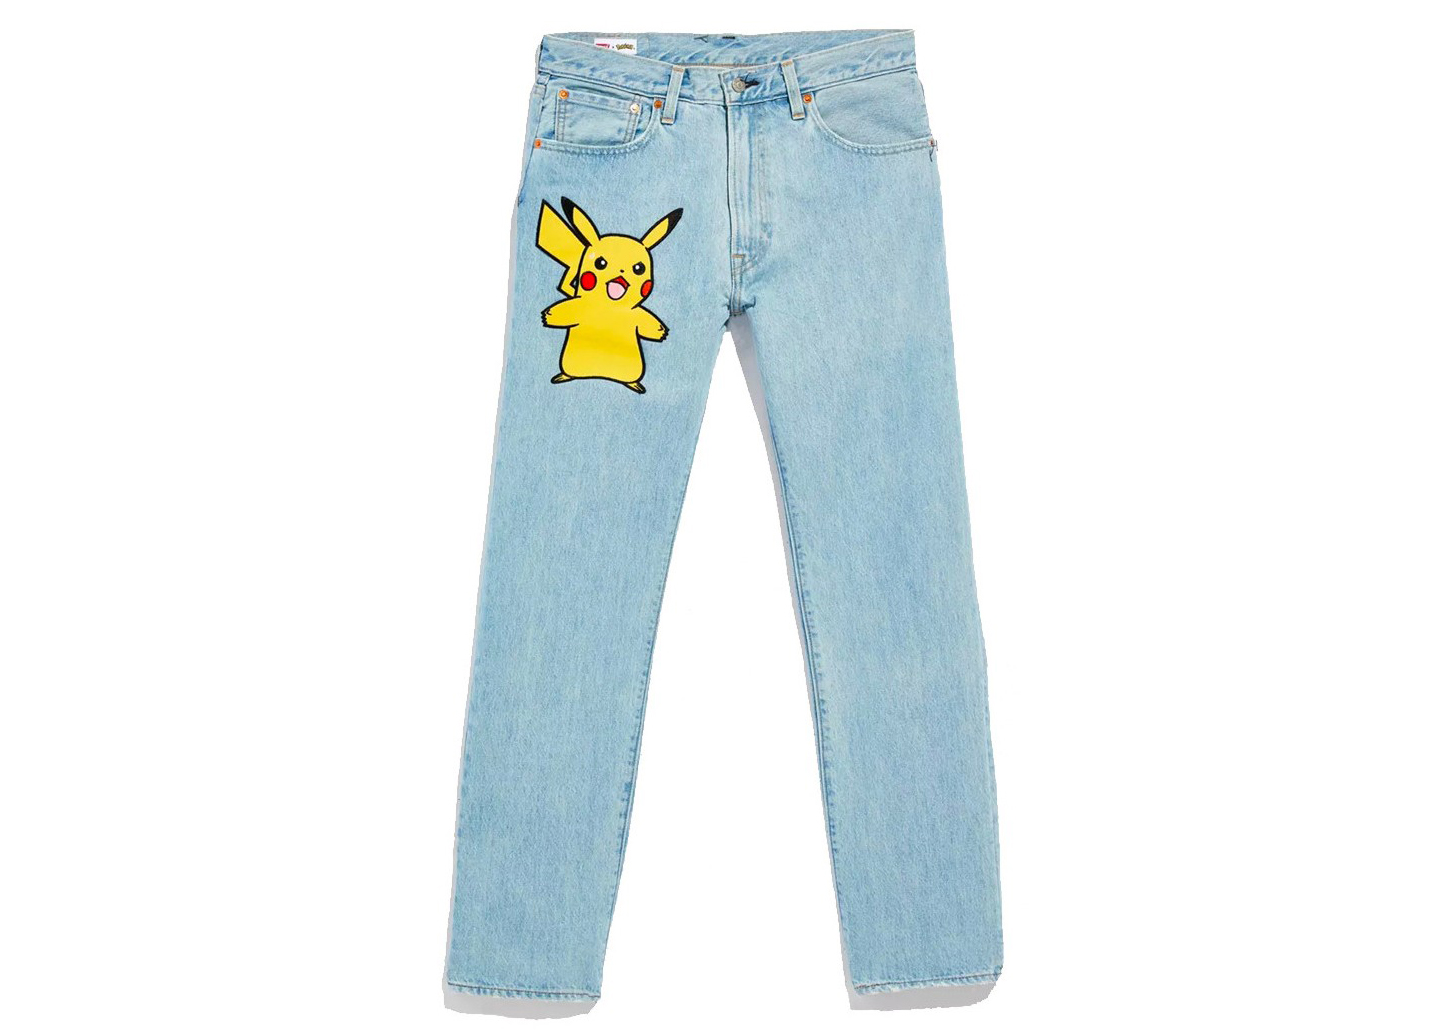 Levis x Pokémon 551Z Authentic Straight Jeans Light Wash Men's 